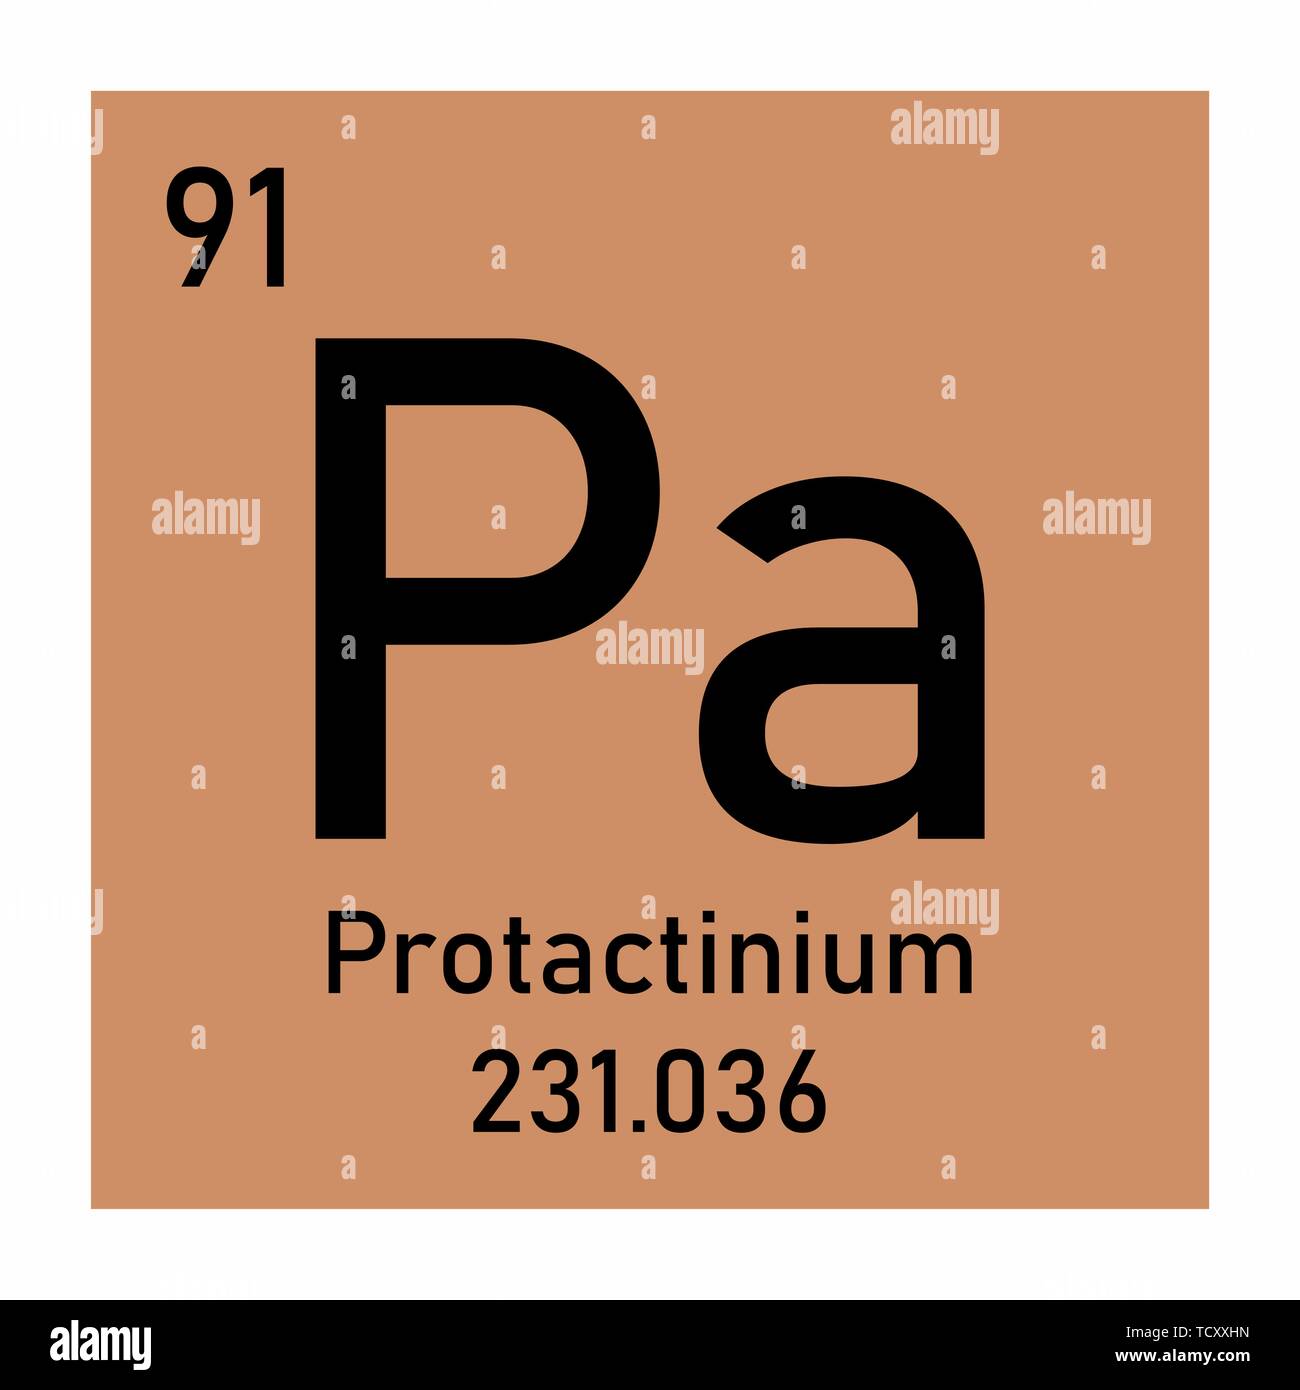 Ra какой элемент. Протактиний химический элемент. Радий элемент. Ra химический элемент. Химический эелемен традий.